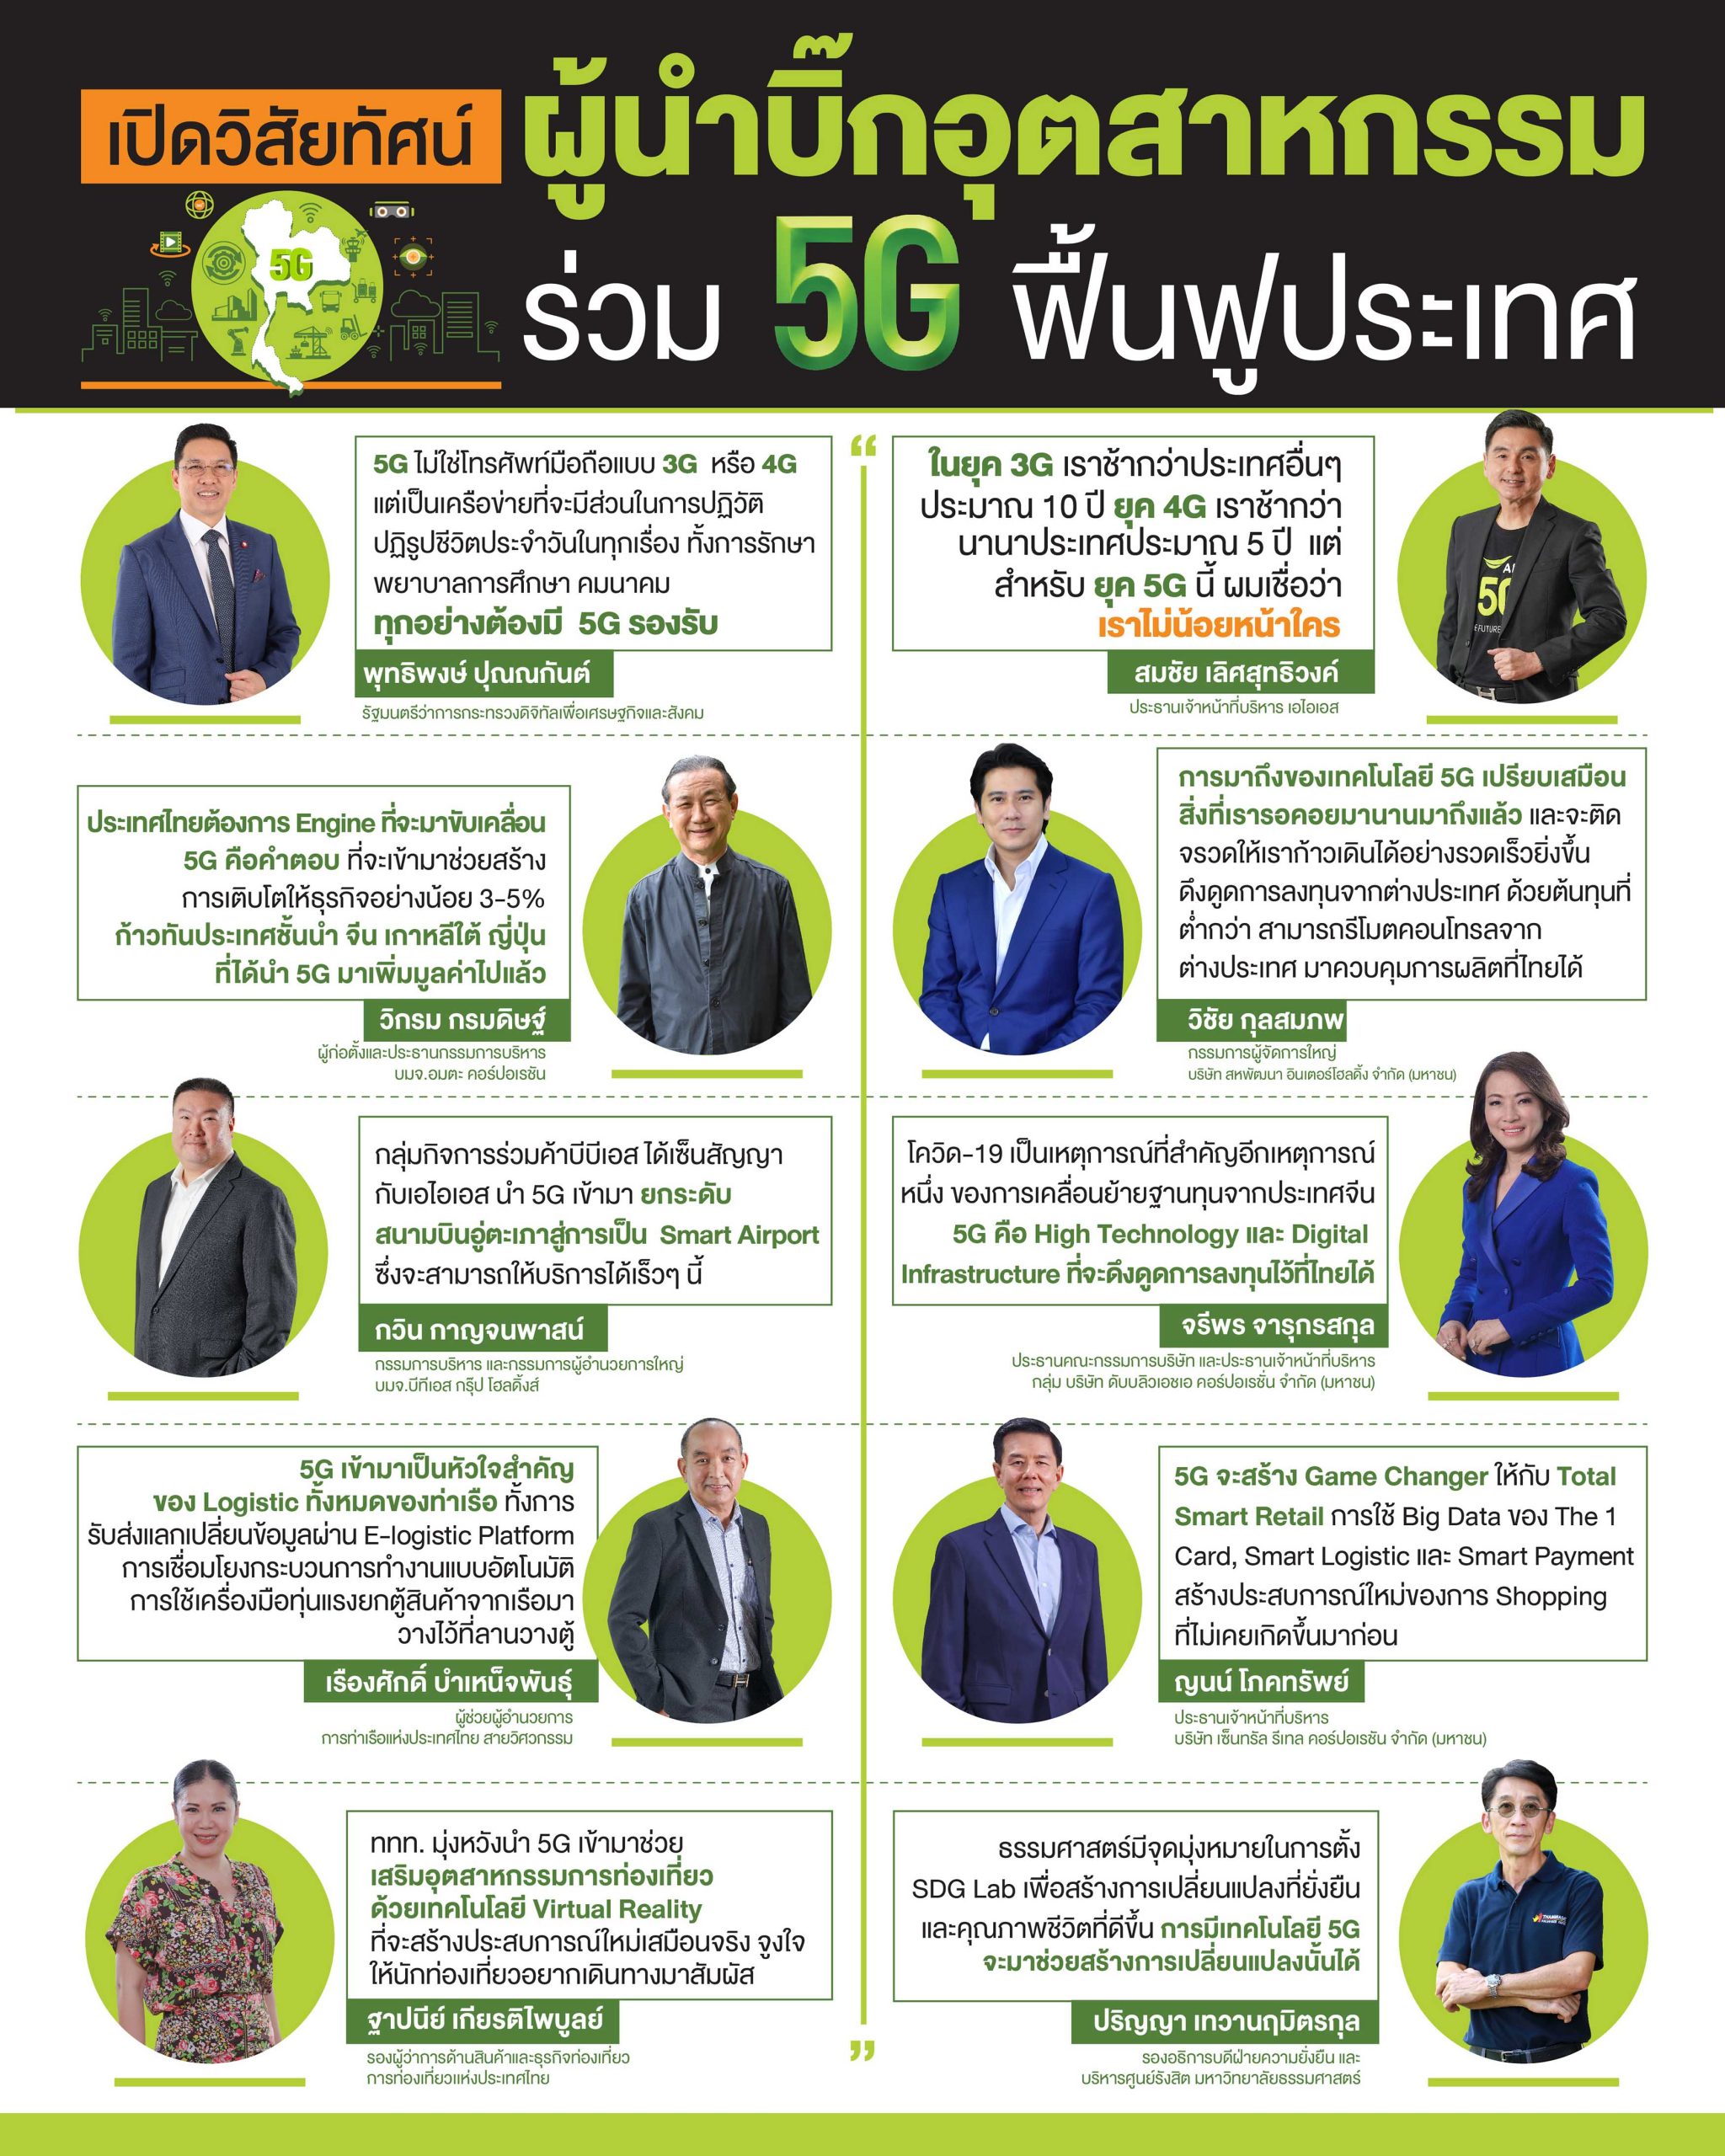 10 บิ๊กอุตสาหกรรมเส้นเลือดใหญ่ของประเทศ โดดร่วมวง นำ 5G Digital Infrastructure ใหม่ของชาติ ร่วมแรงสู้ฟื้นฟูประเทศไทย